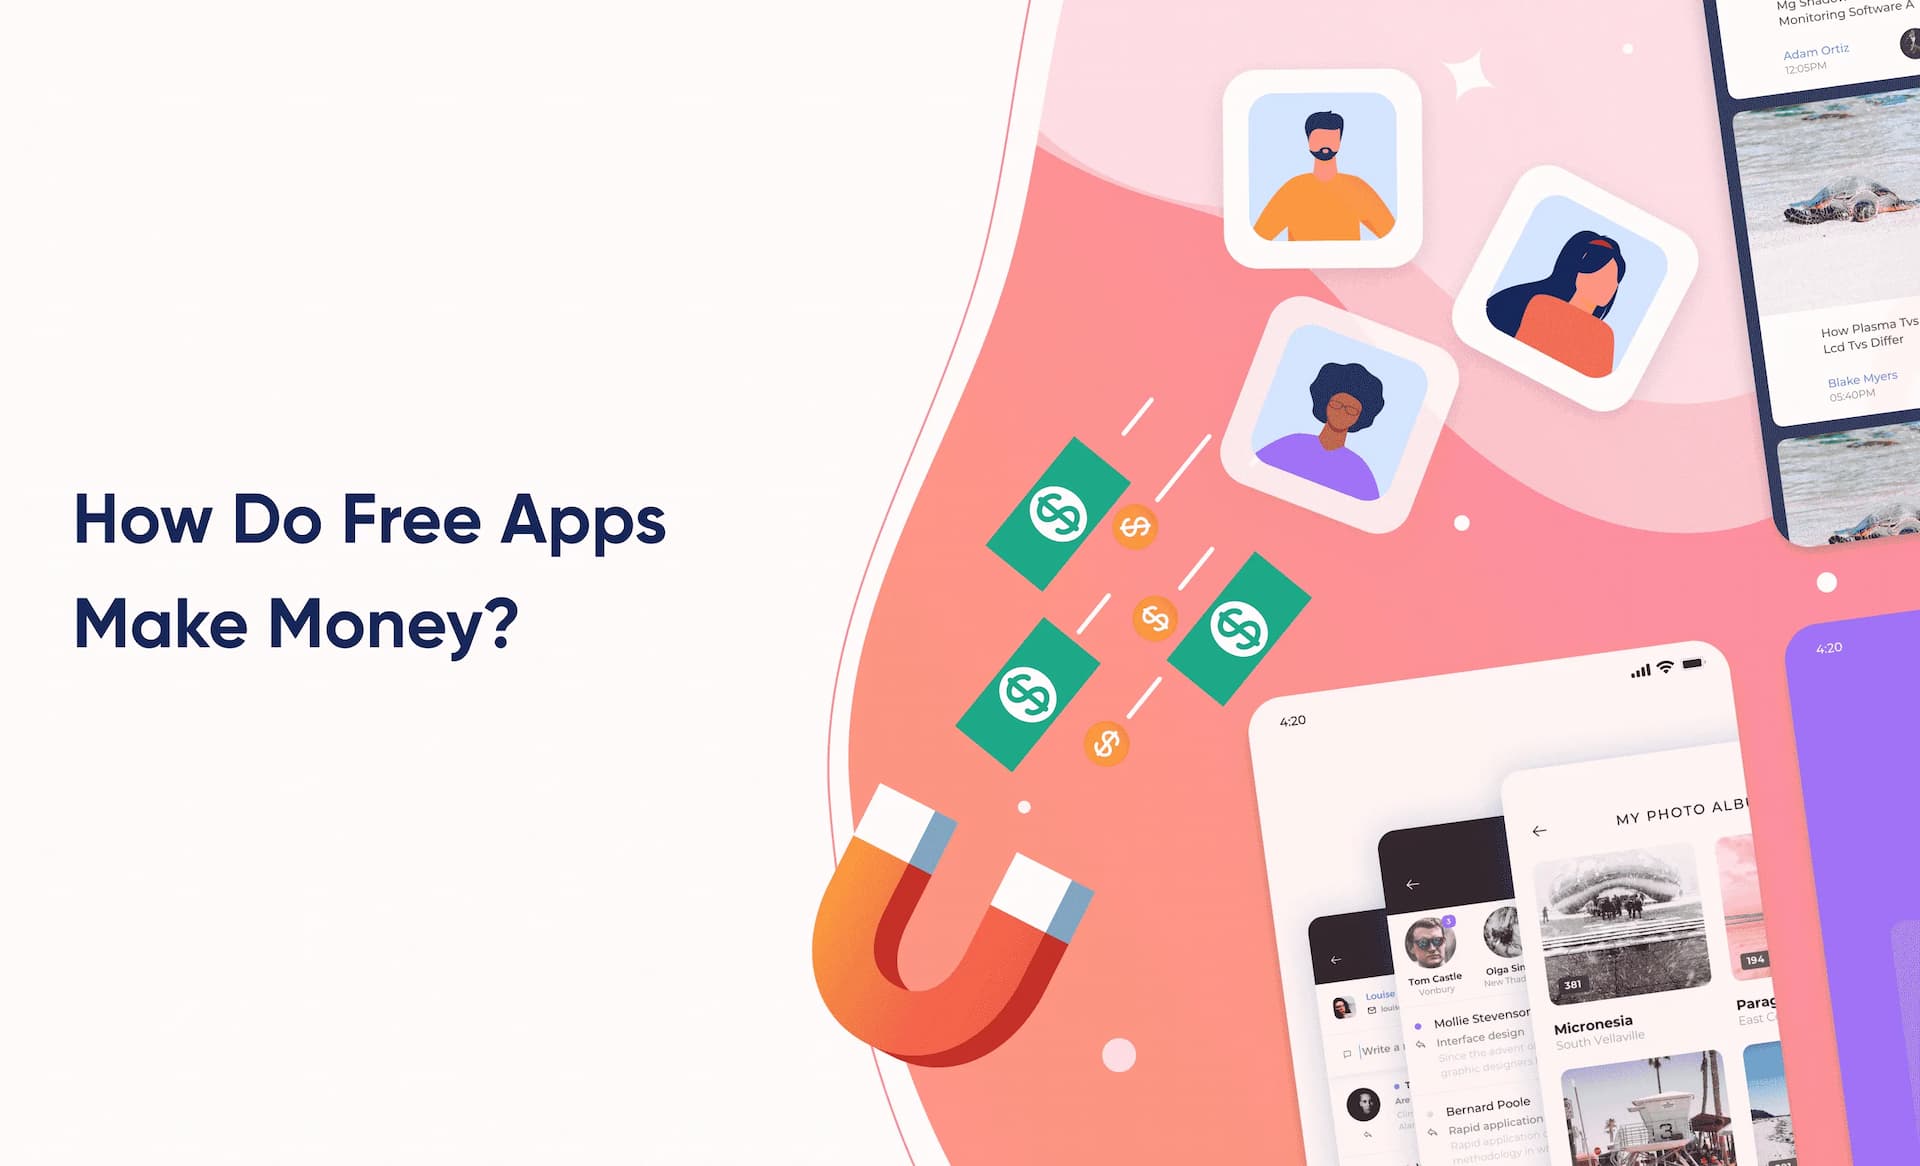 How Do Free Apps Make Money?